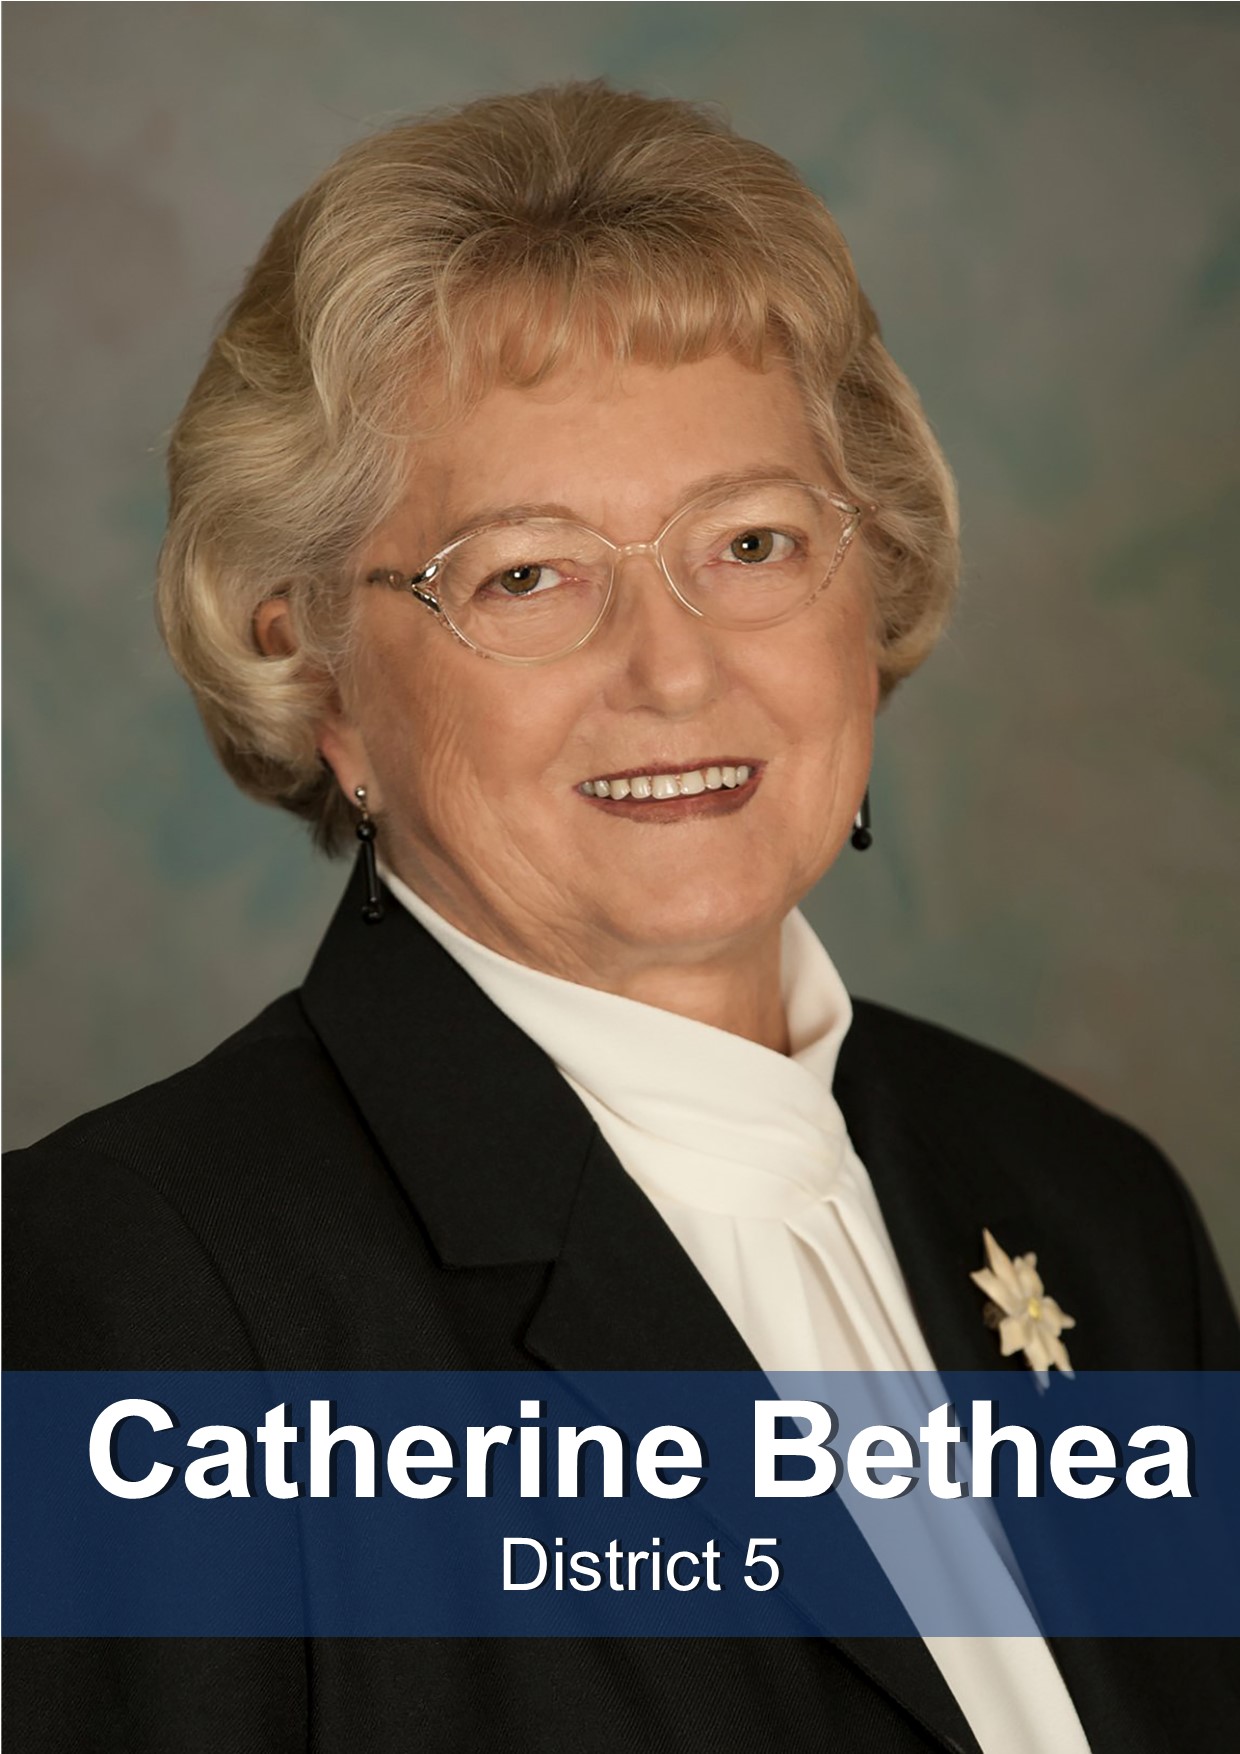 Catherine Bethea District 5